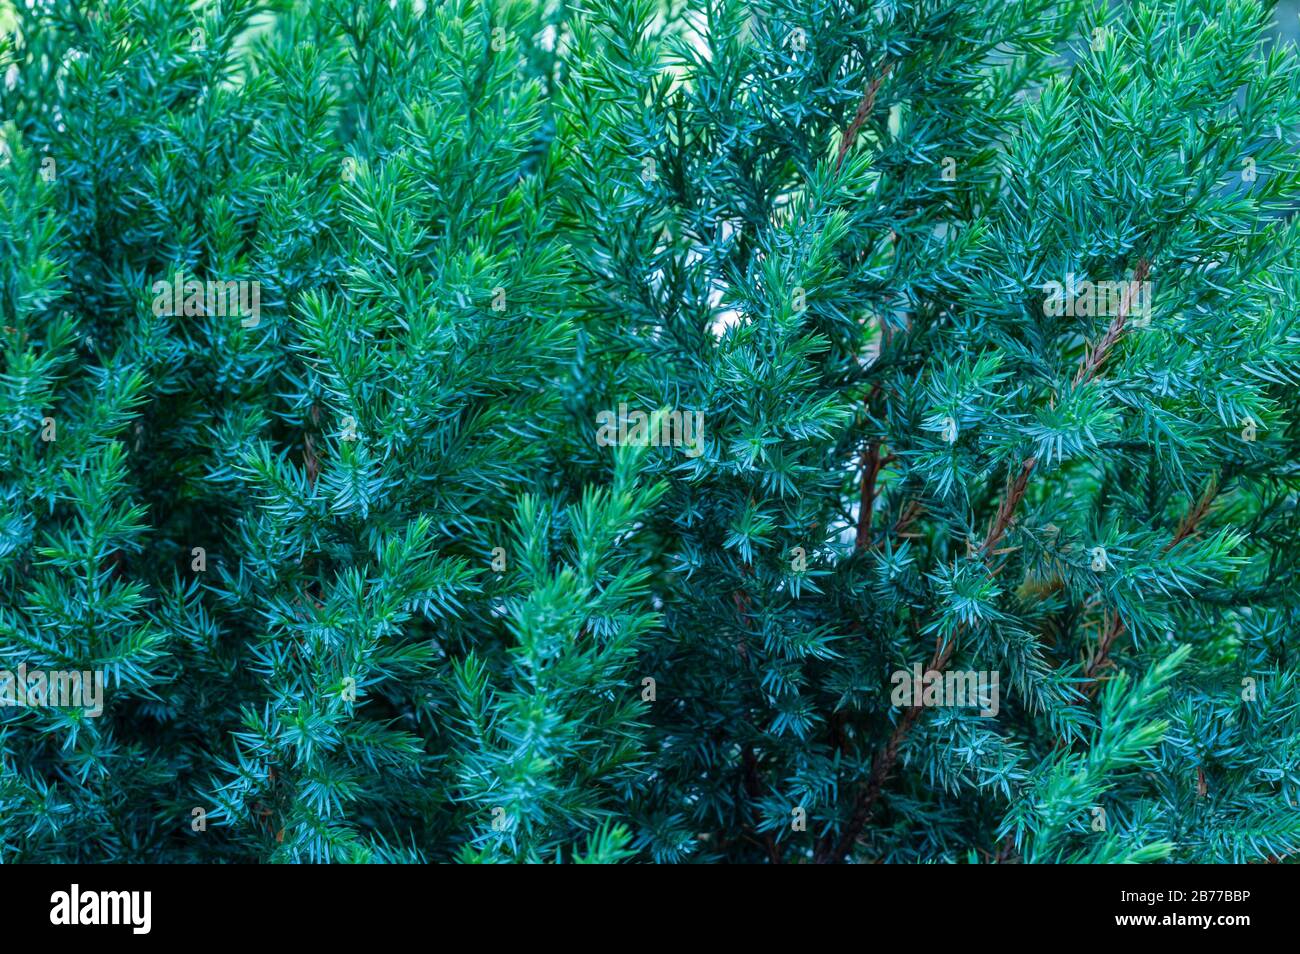 Immergrüner Wacholderstrauch, Nahaufnahme grüner Äste mit Sonnenlicht. Juniperus horizontalis Schleichender Wacholder. Nadelhintergrund für Strukturierung von Baumzweigen. Stockfoto